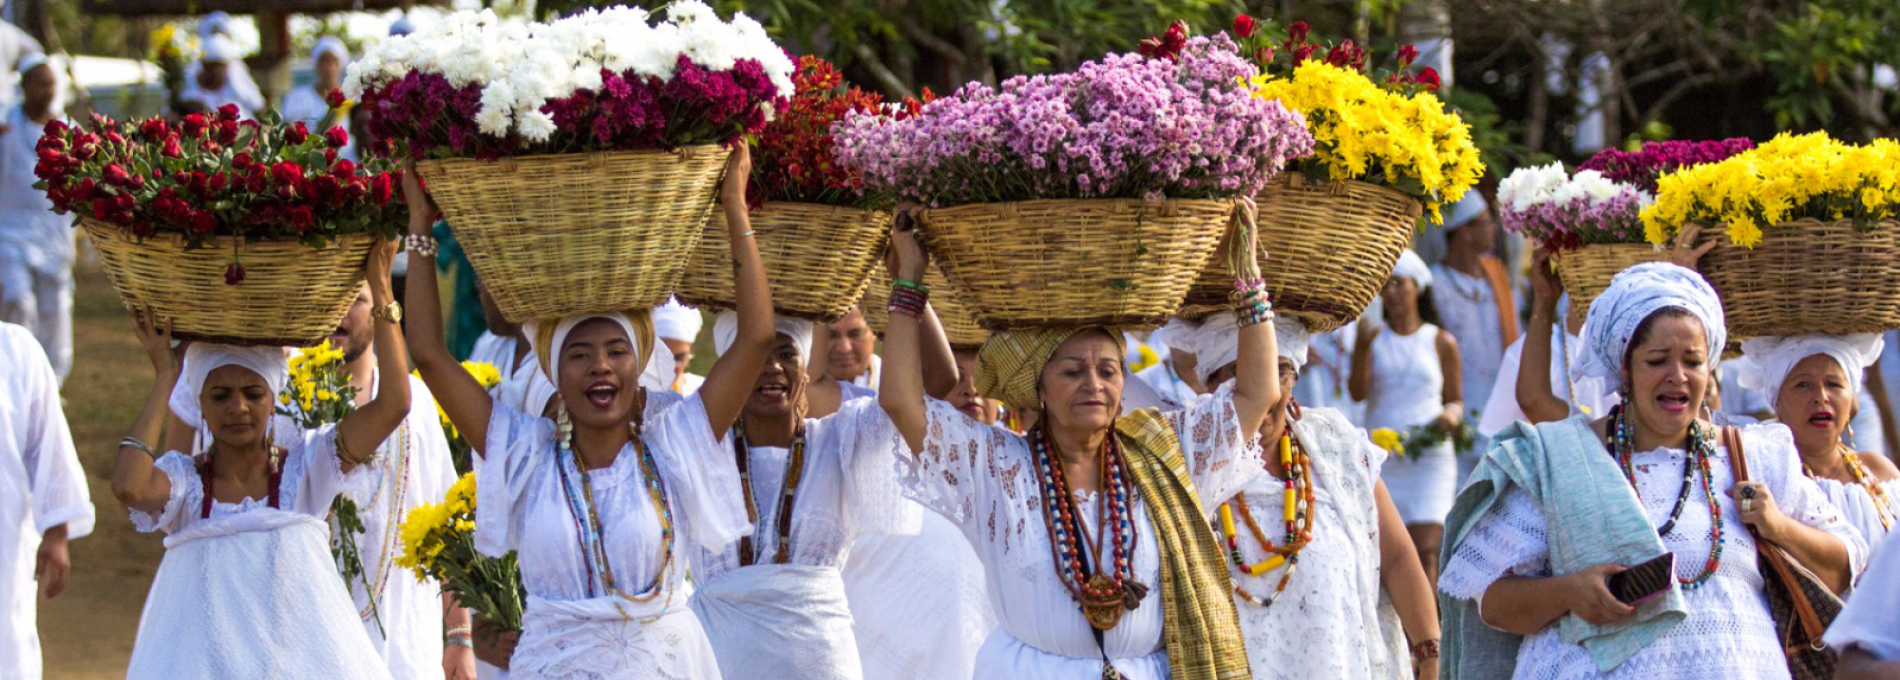 30 lugares essenciais de cultura negra no Brasil